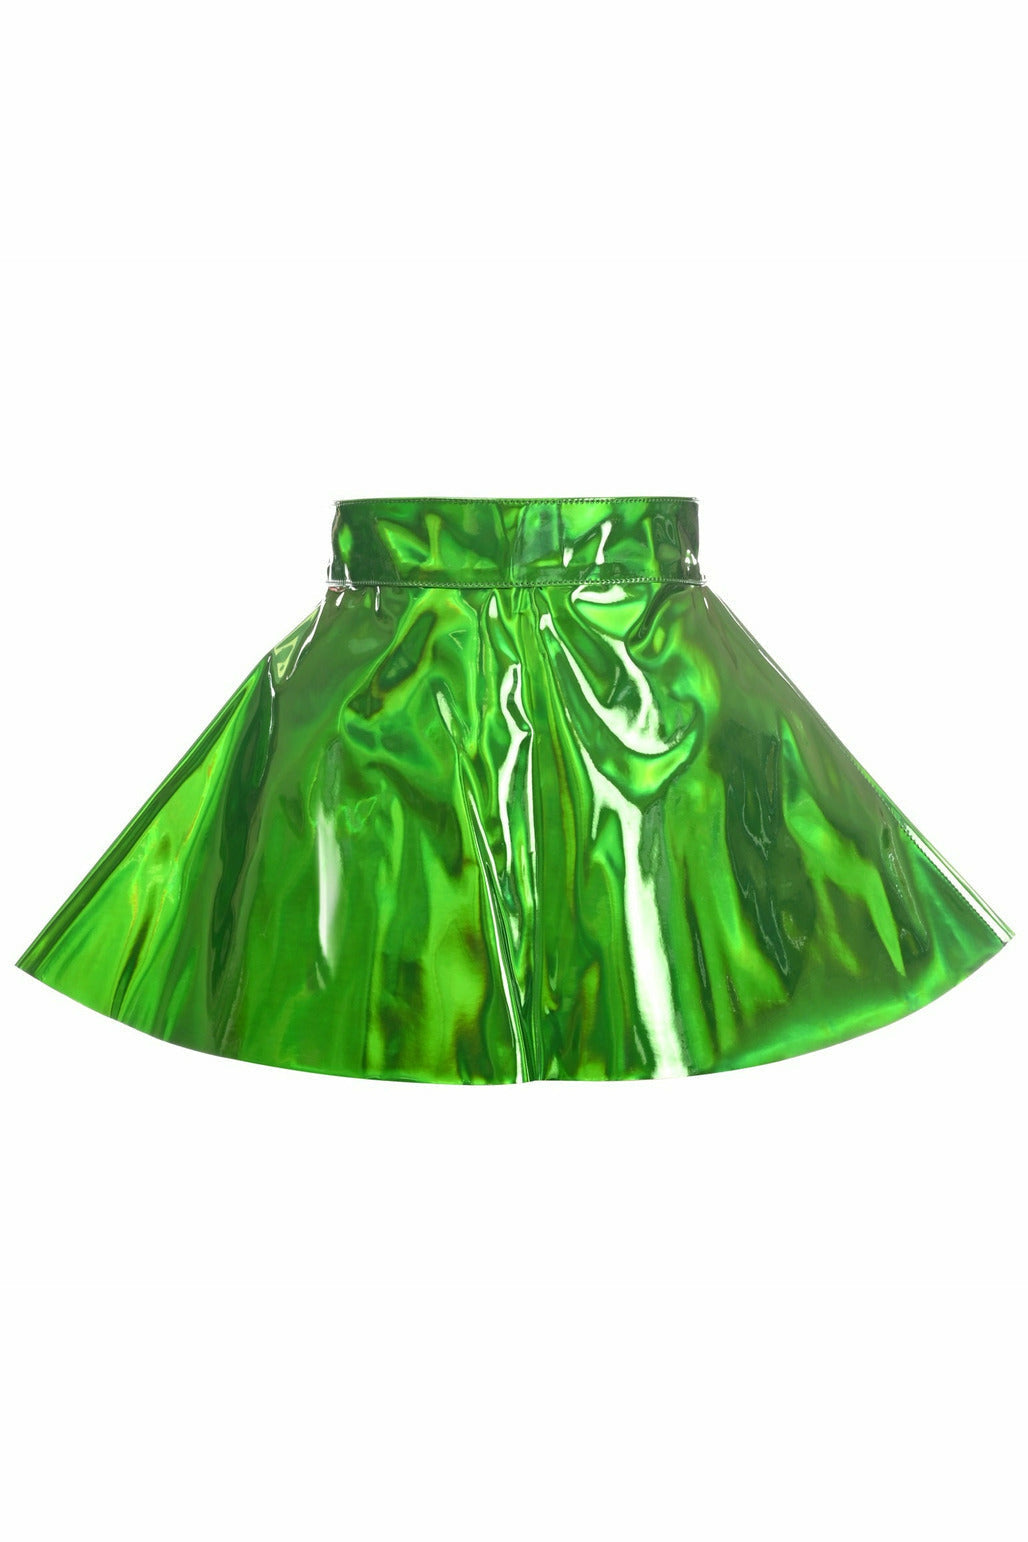 Green Holo Skater Skirt - Lust Charm 